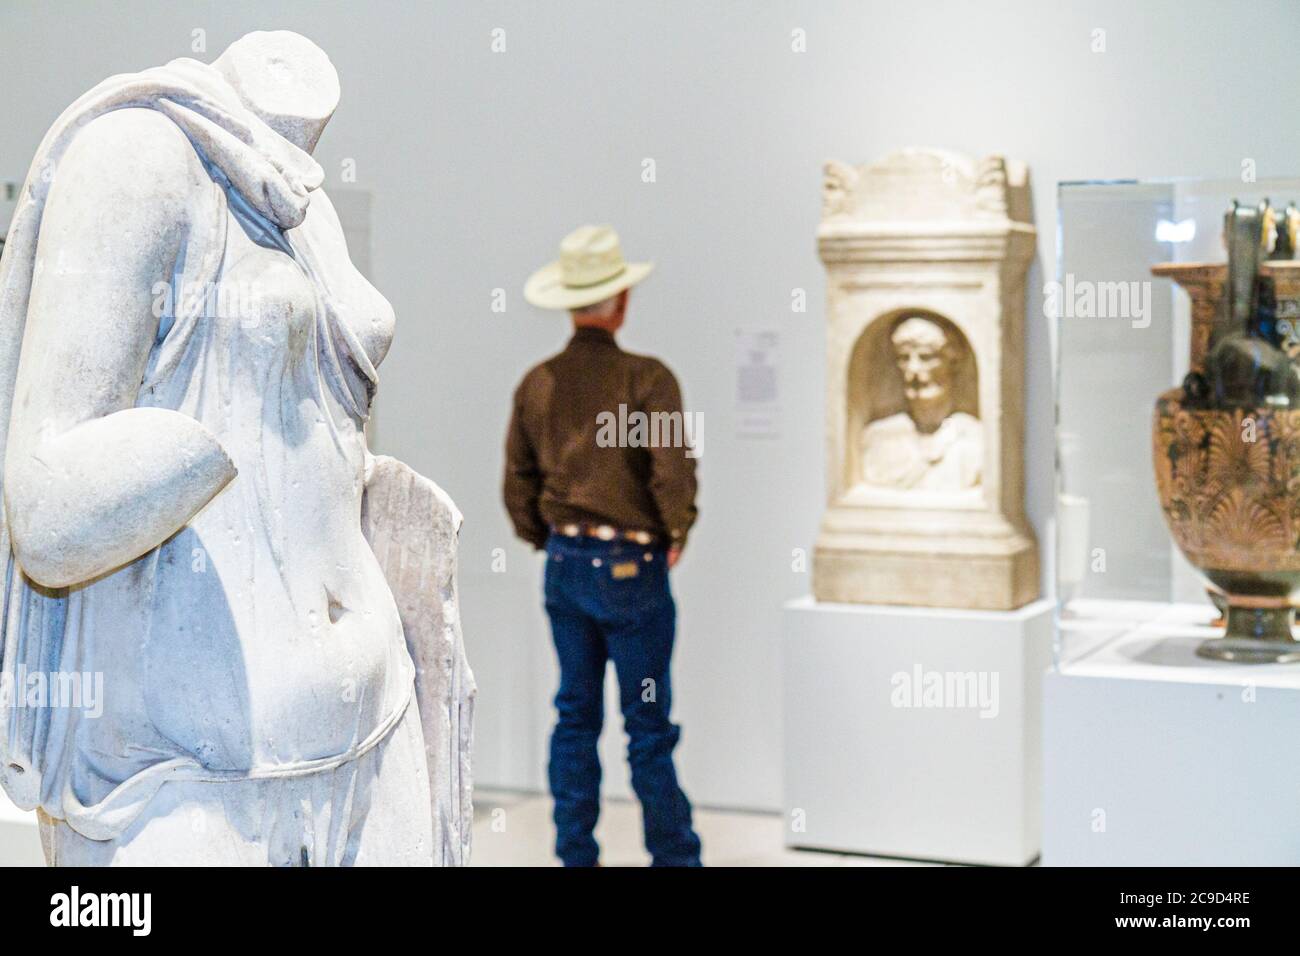 Tampa, Florida, Tampa Museum of Art, klassische griechische Skulptur, Cowboy, Besucher Reise Reise Reise Tourismus Wahrzeichen Kultur Kultur, Stockfoto